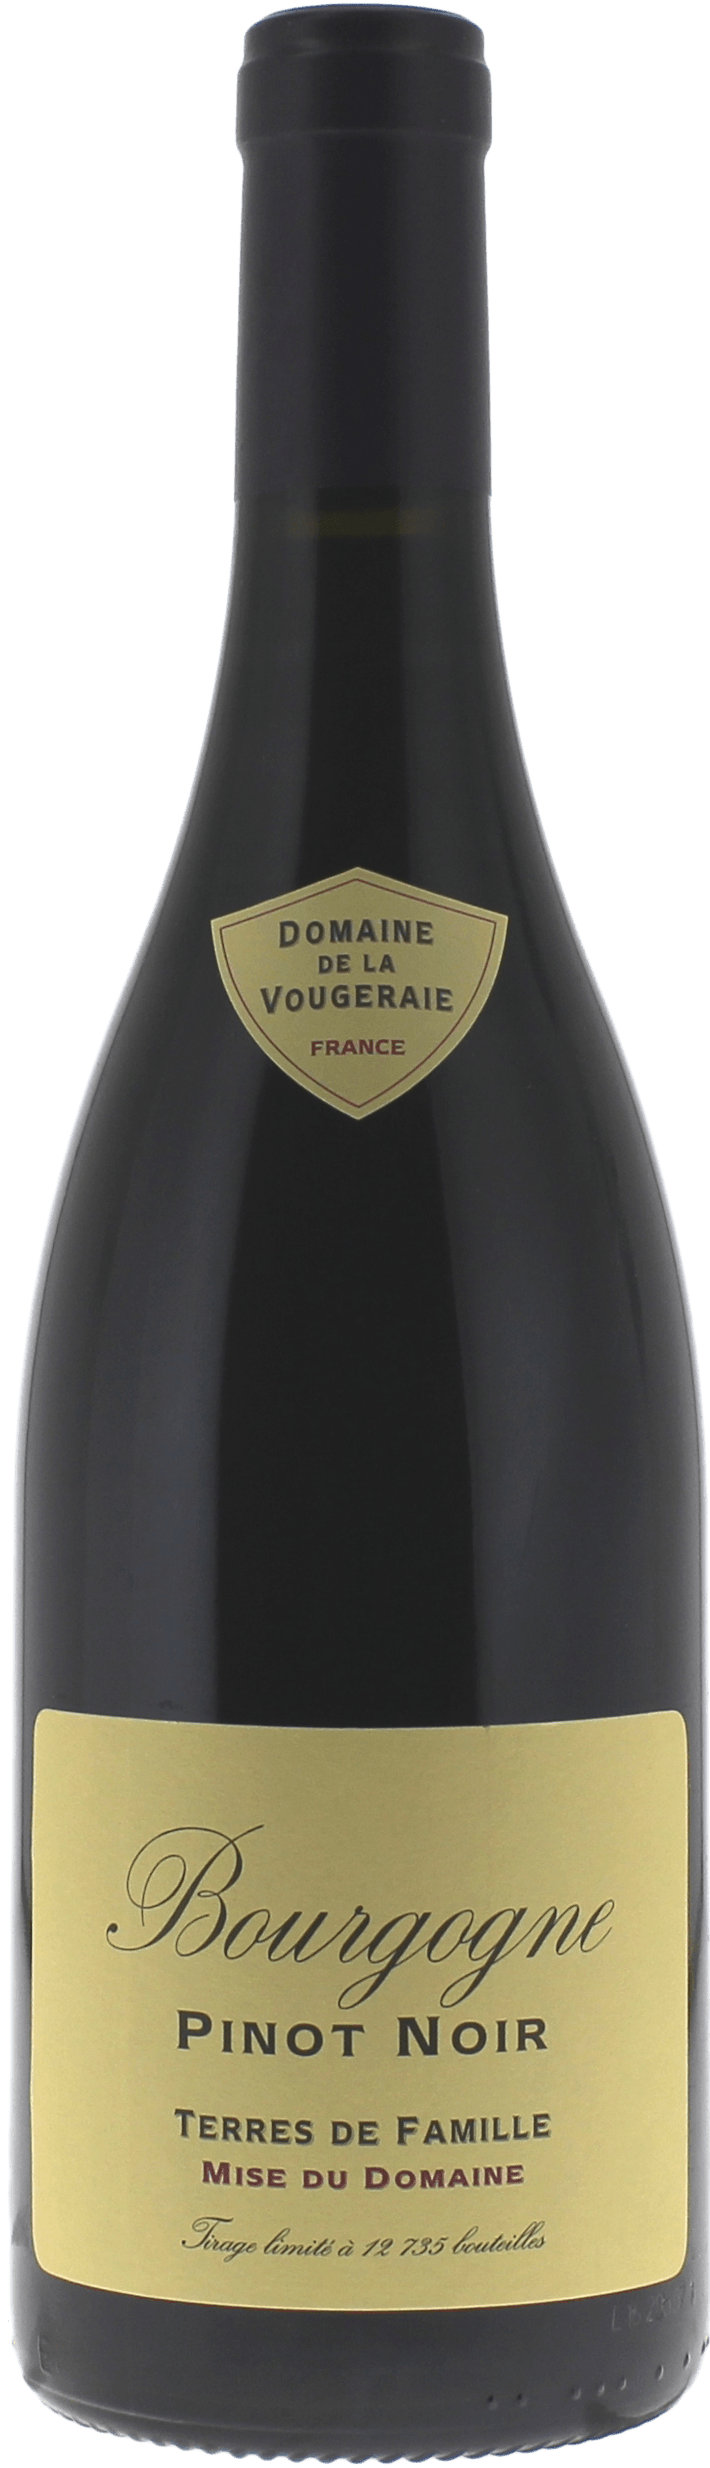 Bourgogne pinot noir terres de famille 2016 Domaine VOUGERAIE, Bourgogne rouge